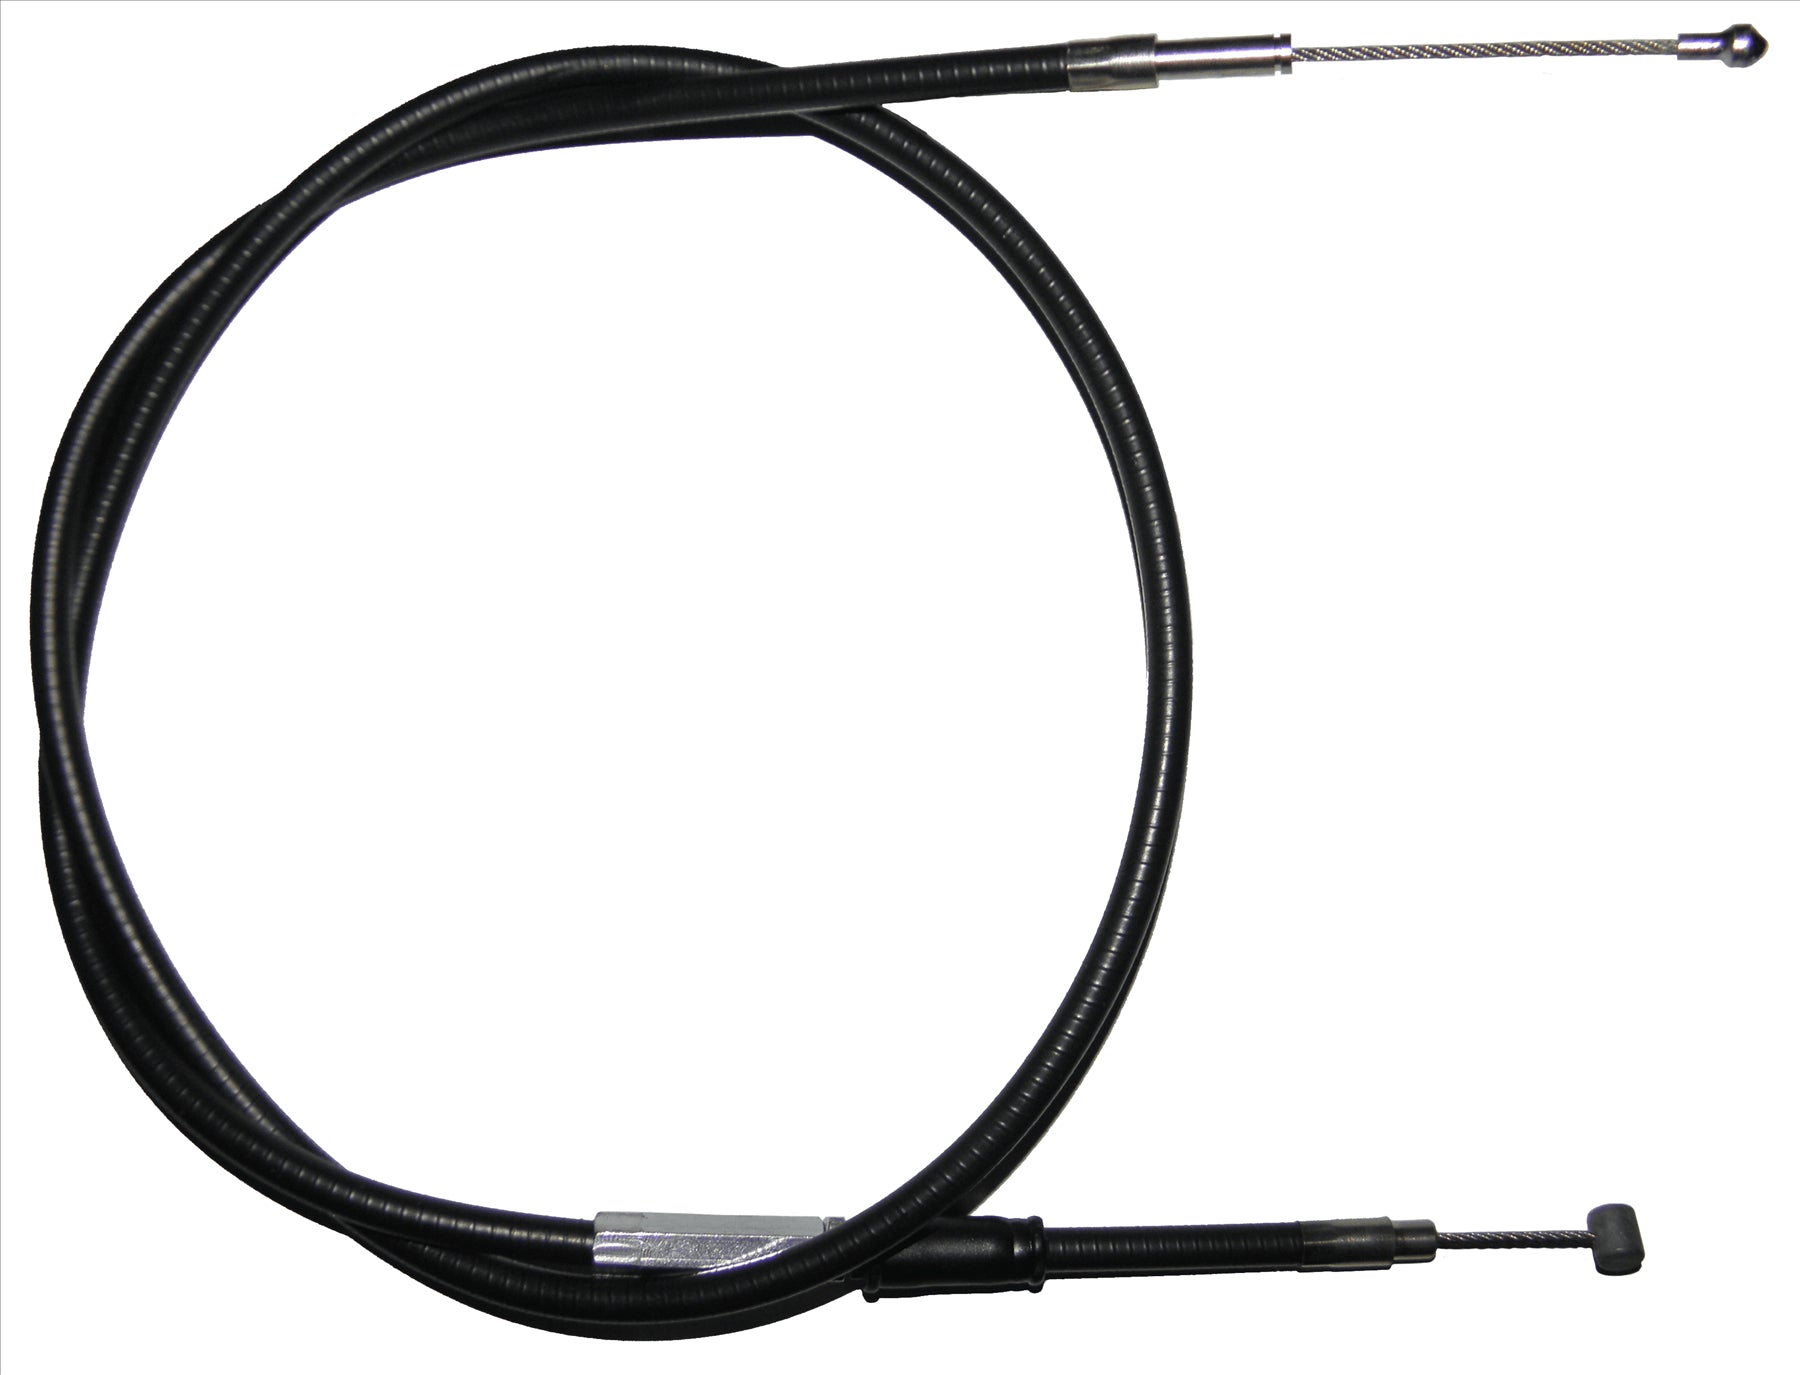 Apico Black Clutch Cable For KTM SX 400 1995-1999